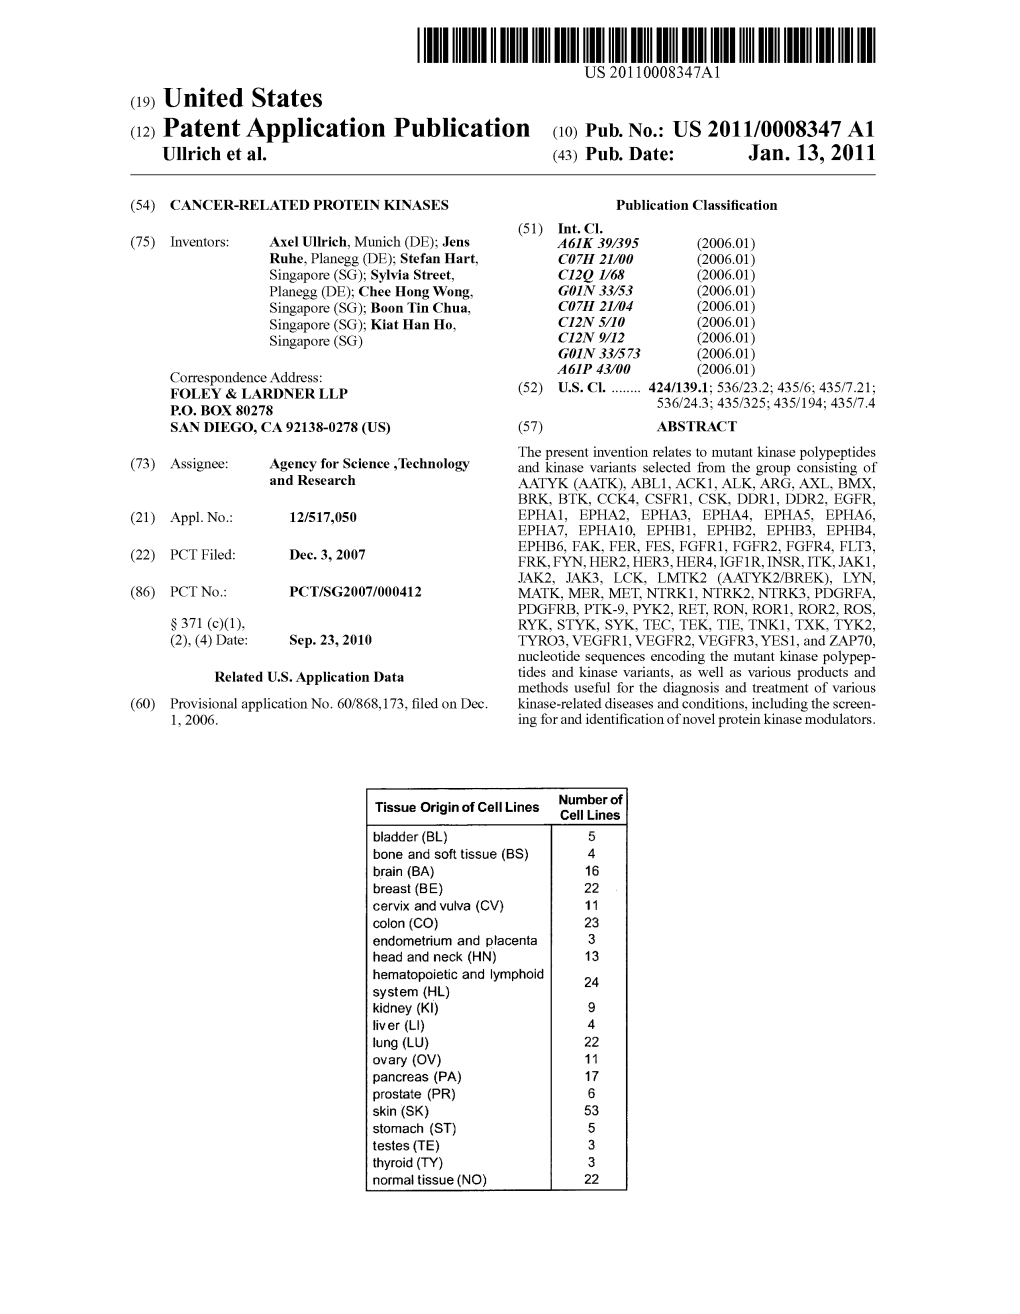 (12) Patent Application Publication (10) Pub. No.: US 2011/0008347 A1 Ullrich Et Al